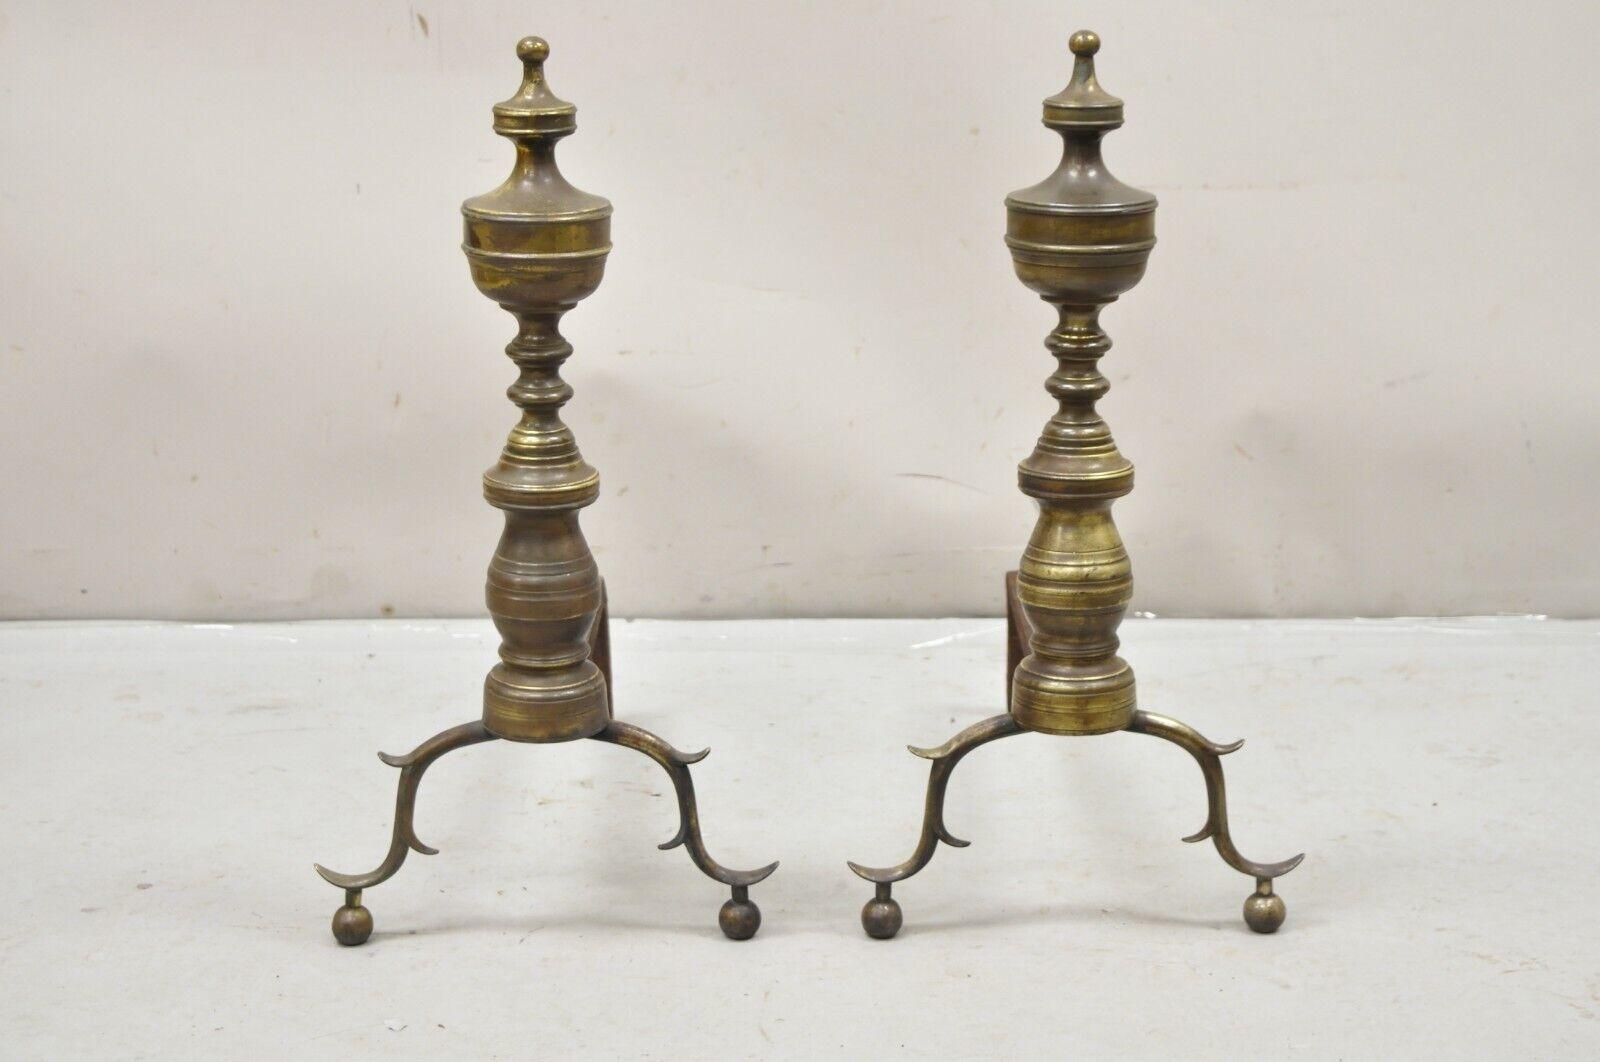 Ancienne paire de chenets en fonte en laiton avec embout d'urne et branche Feder. Circa 19ème siècle. Dimensions : 24